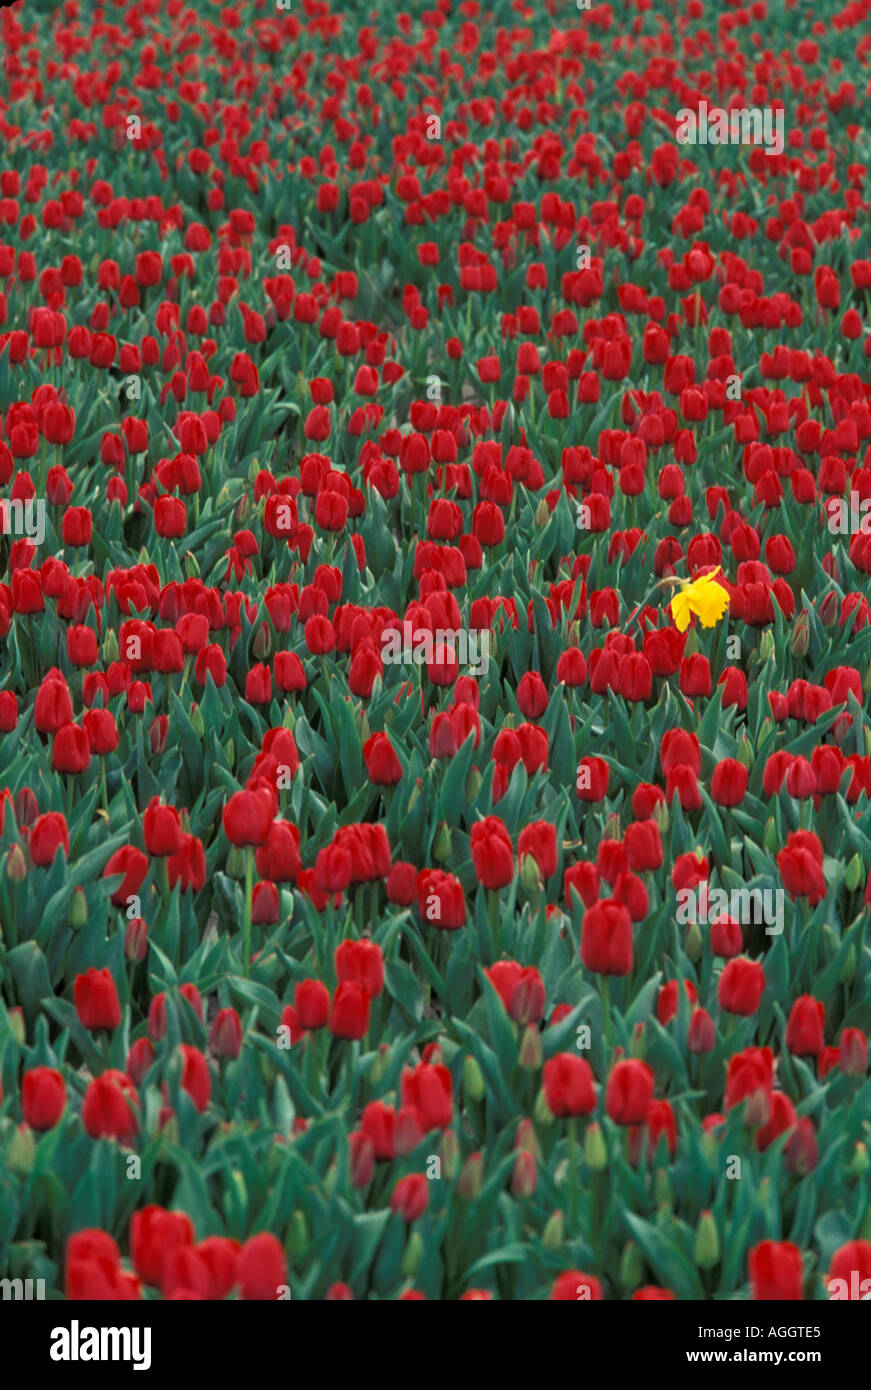 USA Washington Mount Vernon remplir les champs de tulipes s producteur au cours du Festival des tulipes Skagit à la mi-avril Banque D'Images